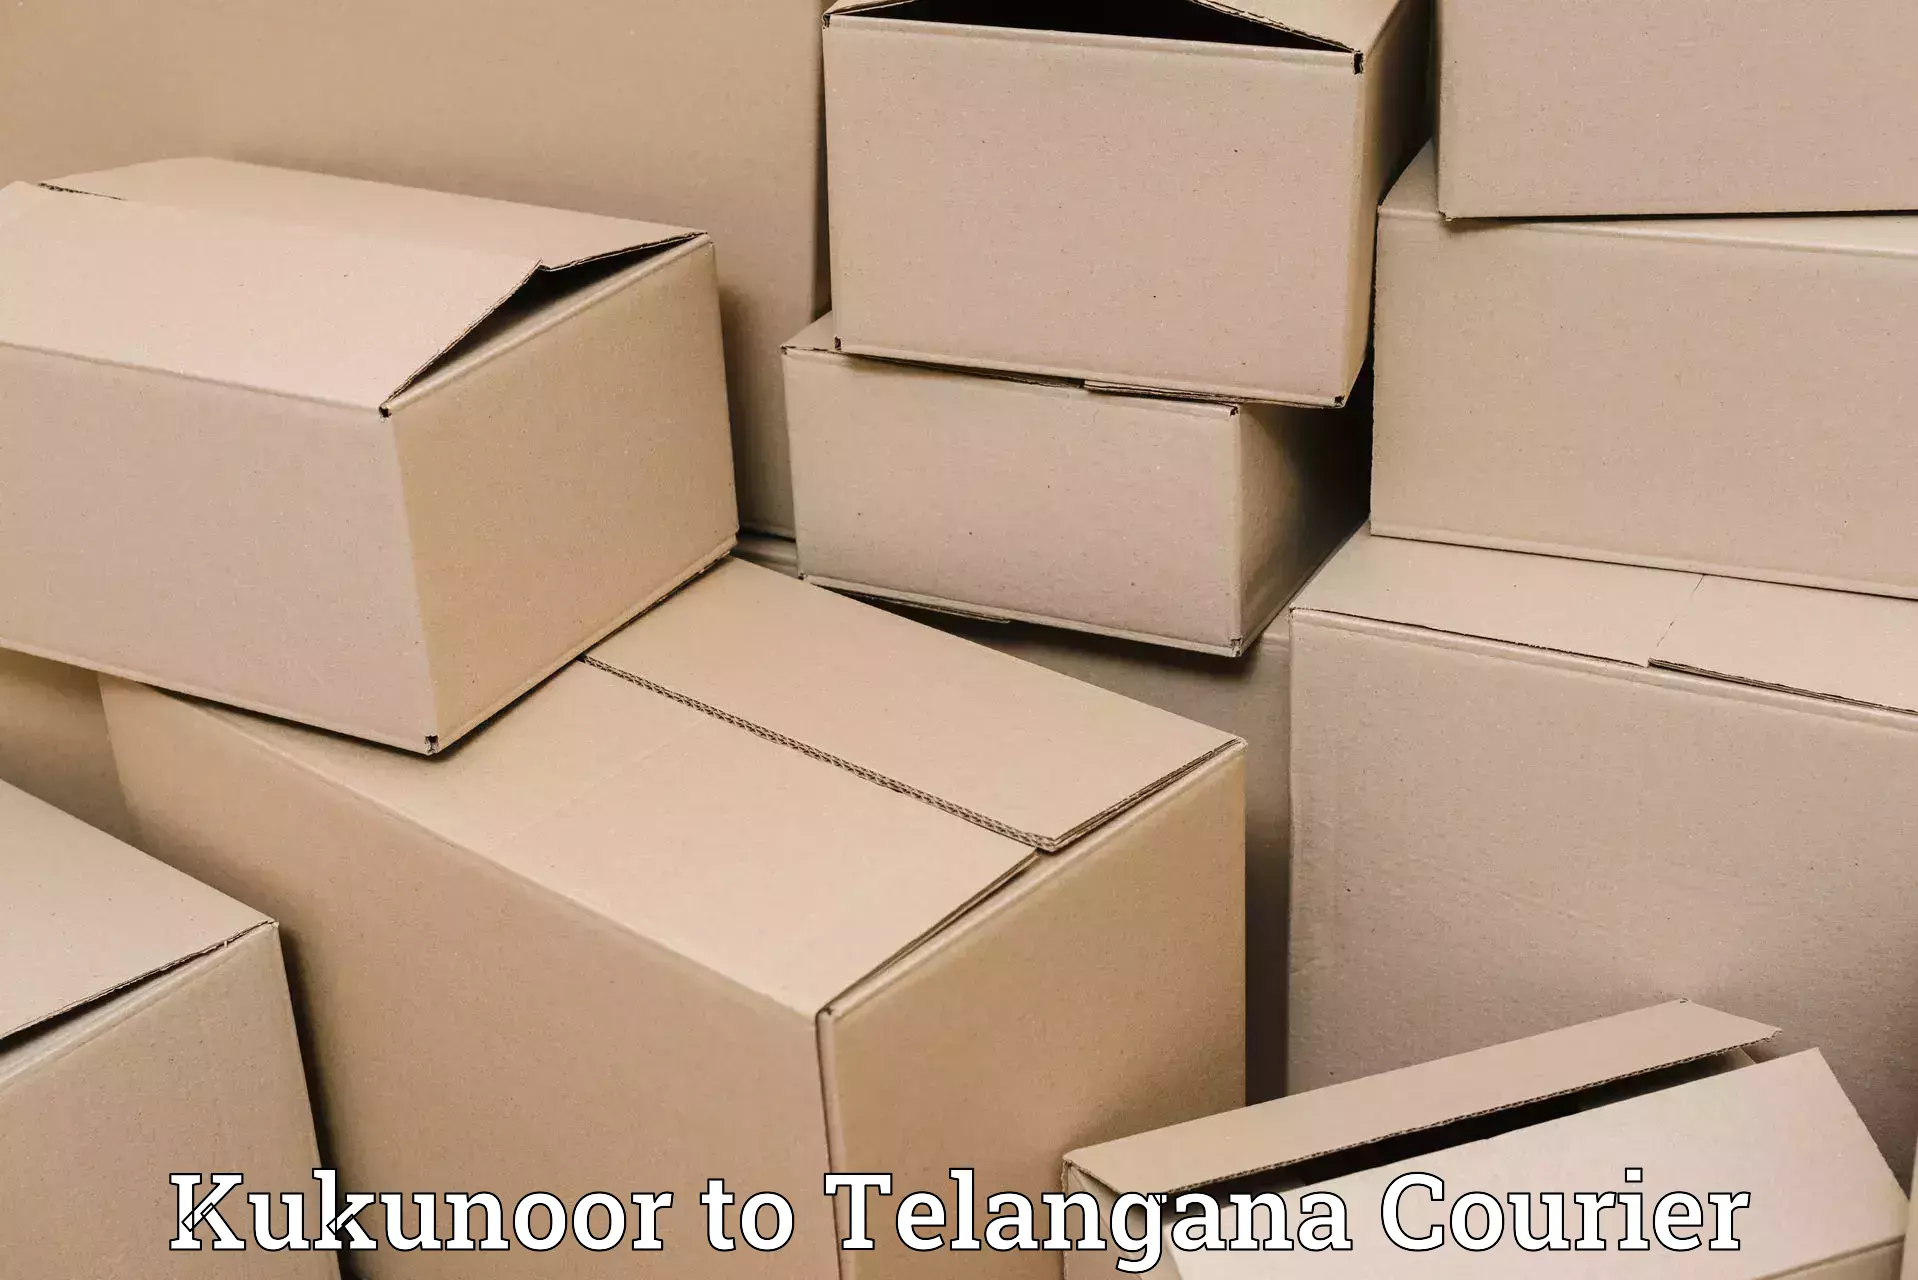 Urgent courier needs Kukunoor to Jainoor